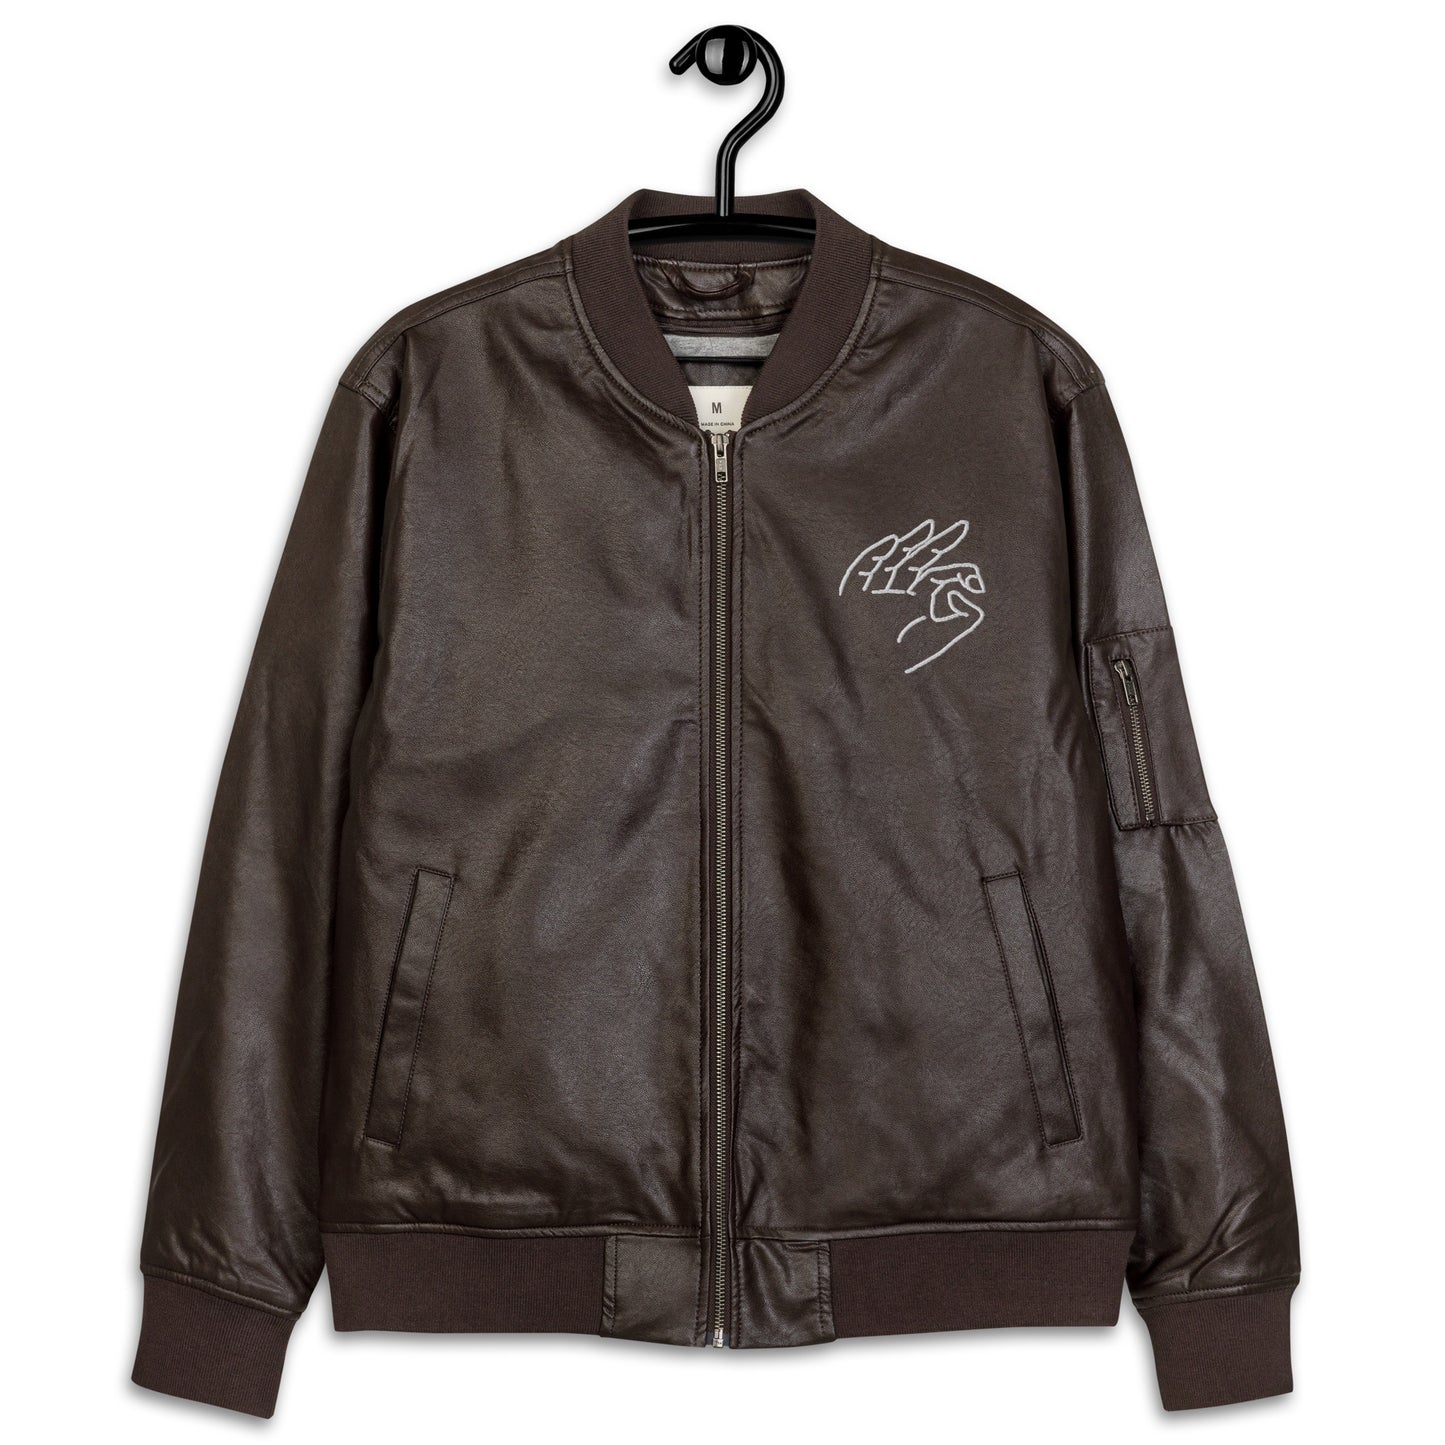 G Leather Jacket